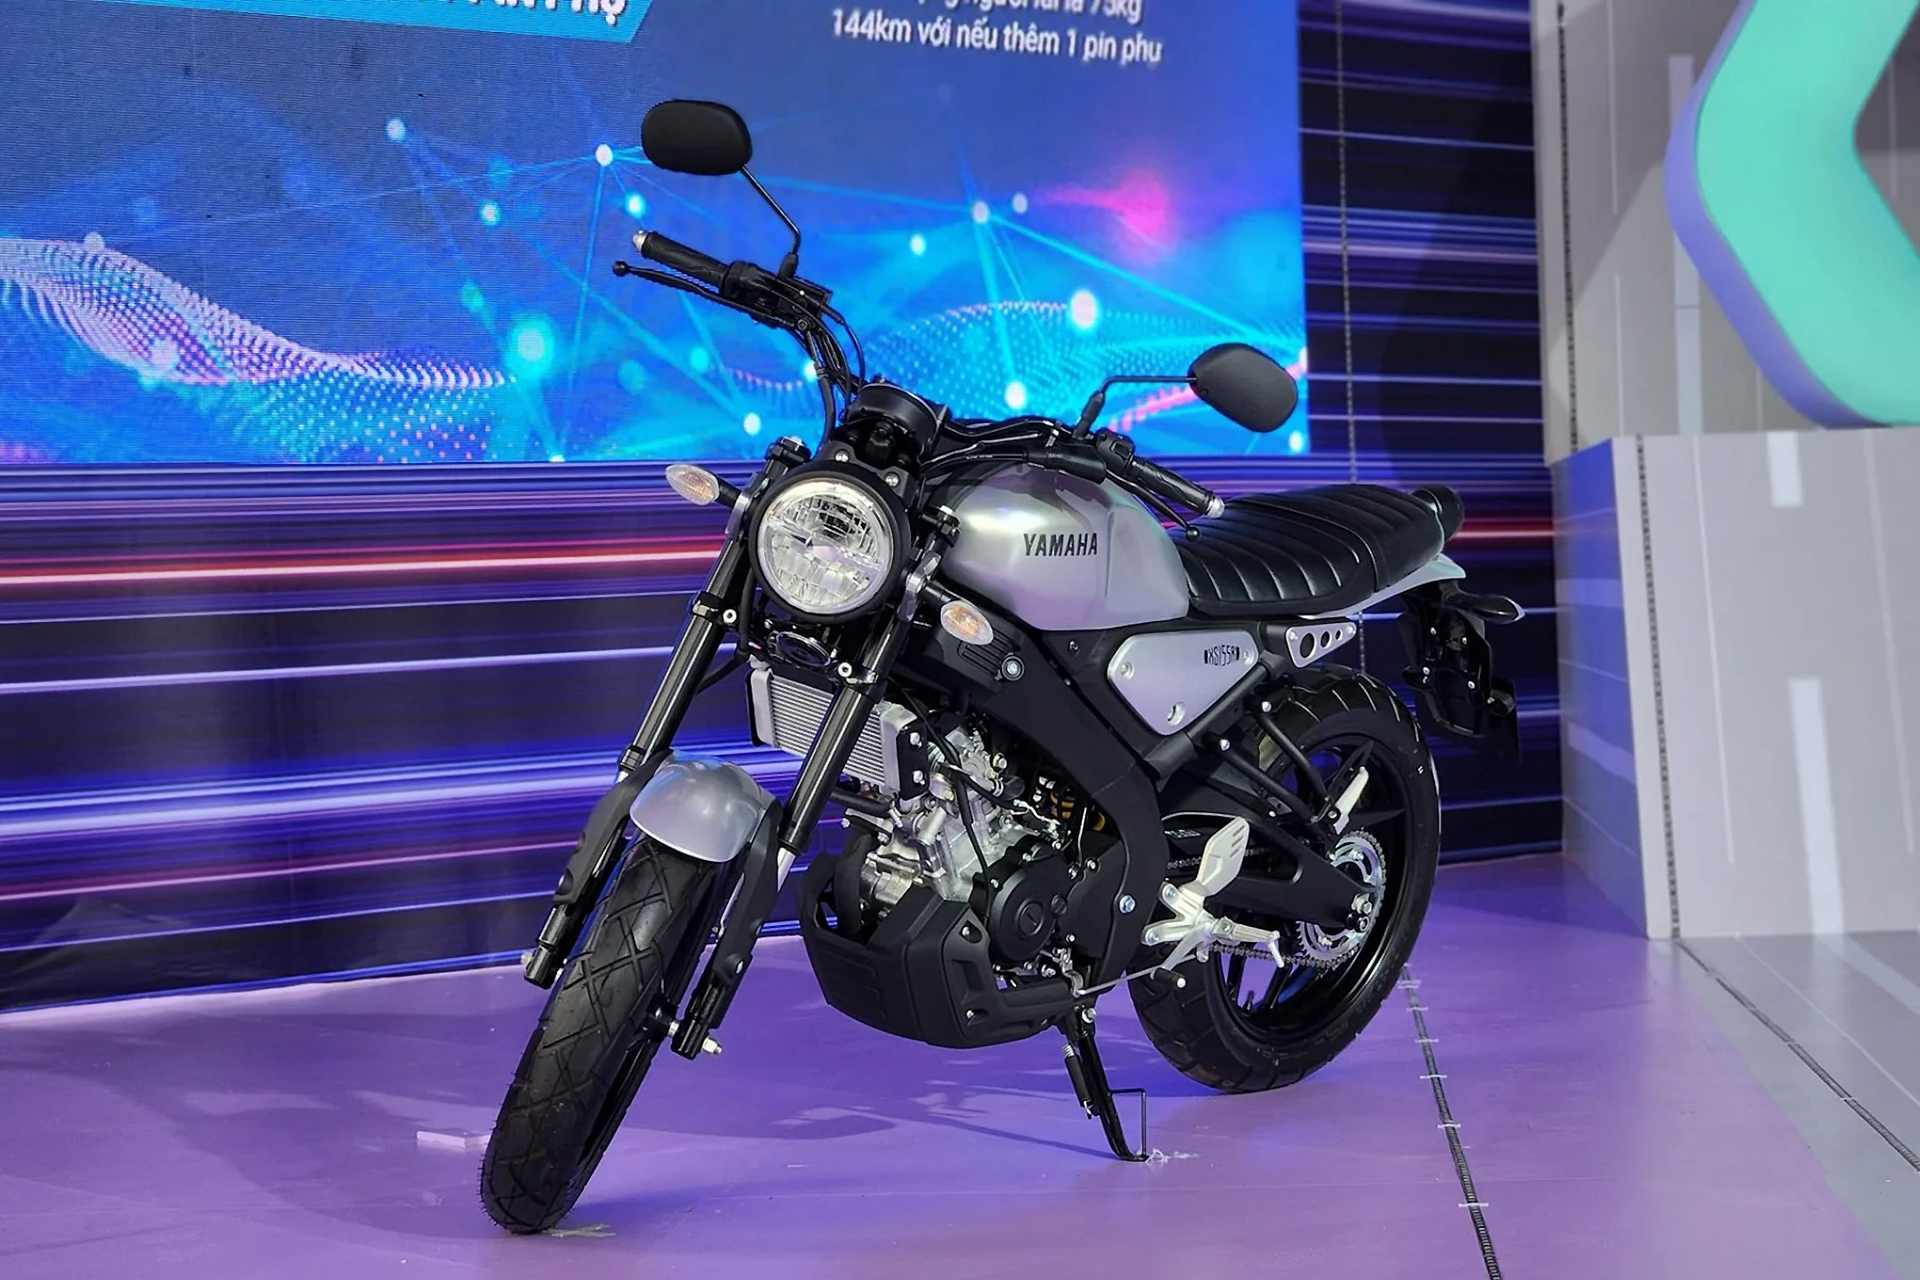 Lộ danh sách các mẫu xe moto Yamaha phân phối chính hãng